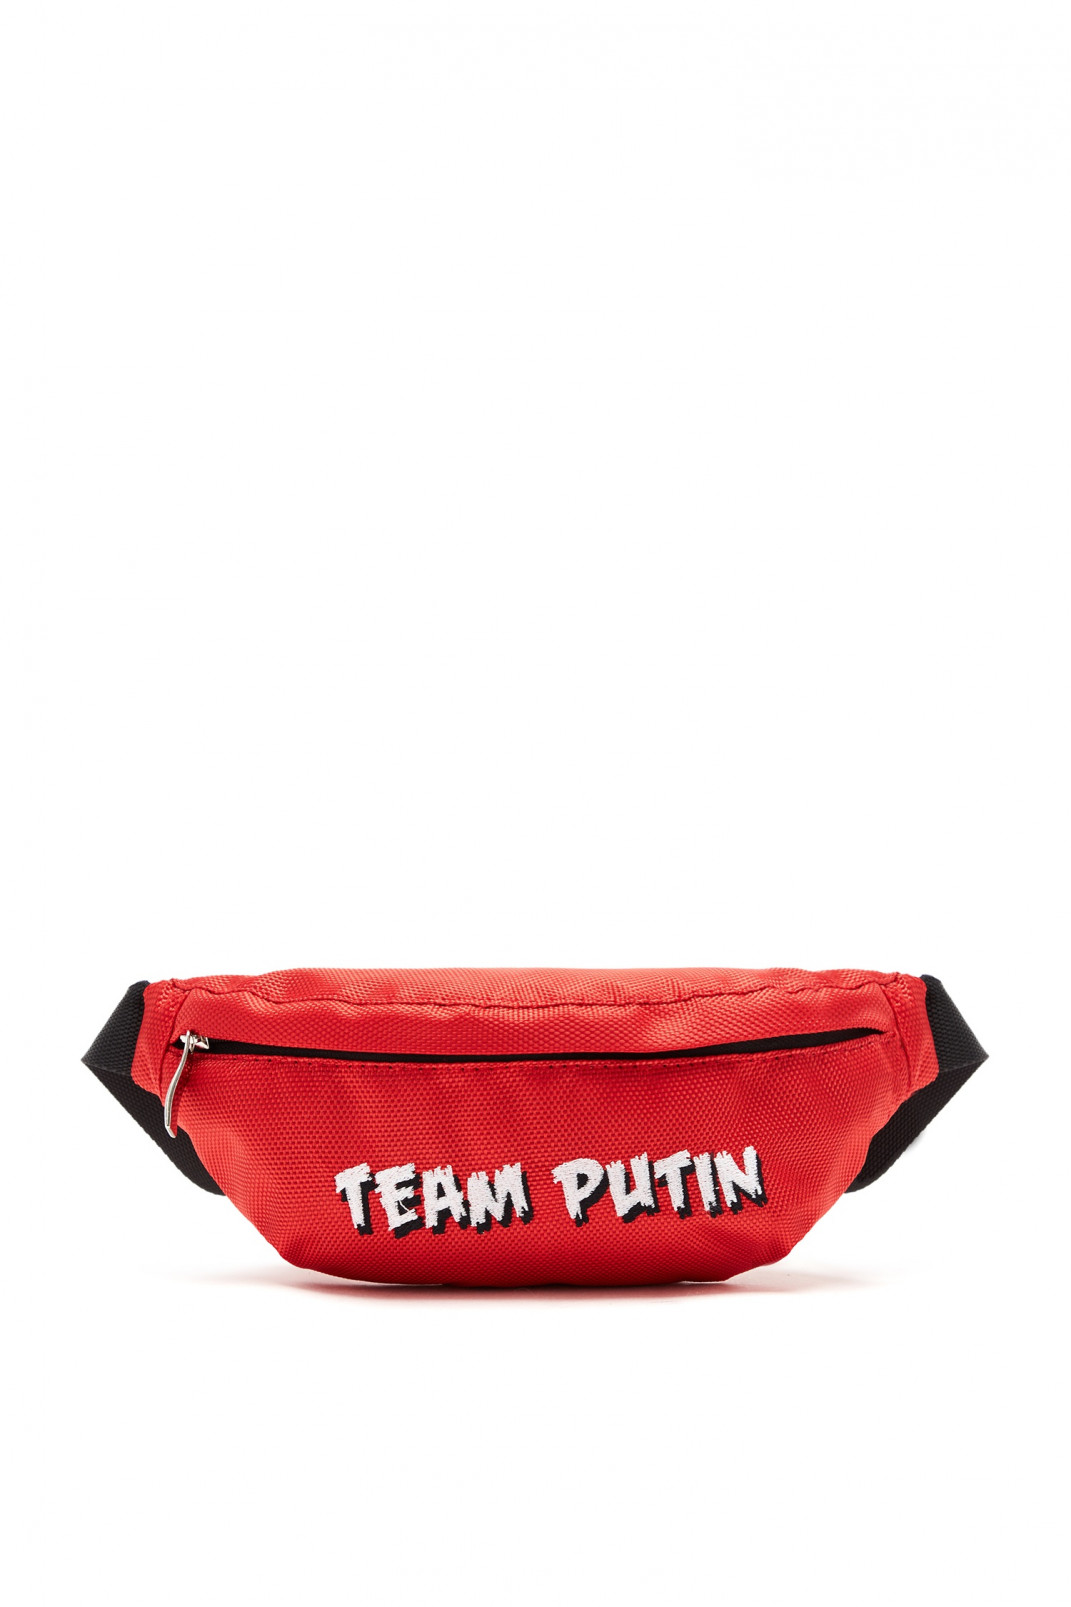 Сумка поясная с вышивкой Putin team  –  531154 Сумка поясная с вышивкой  Модель Общий вид1